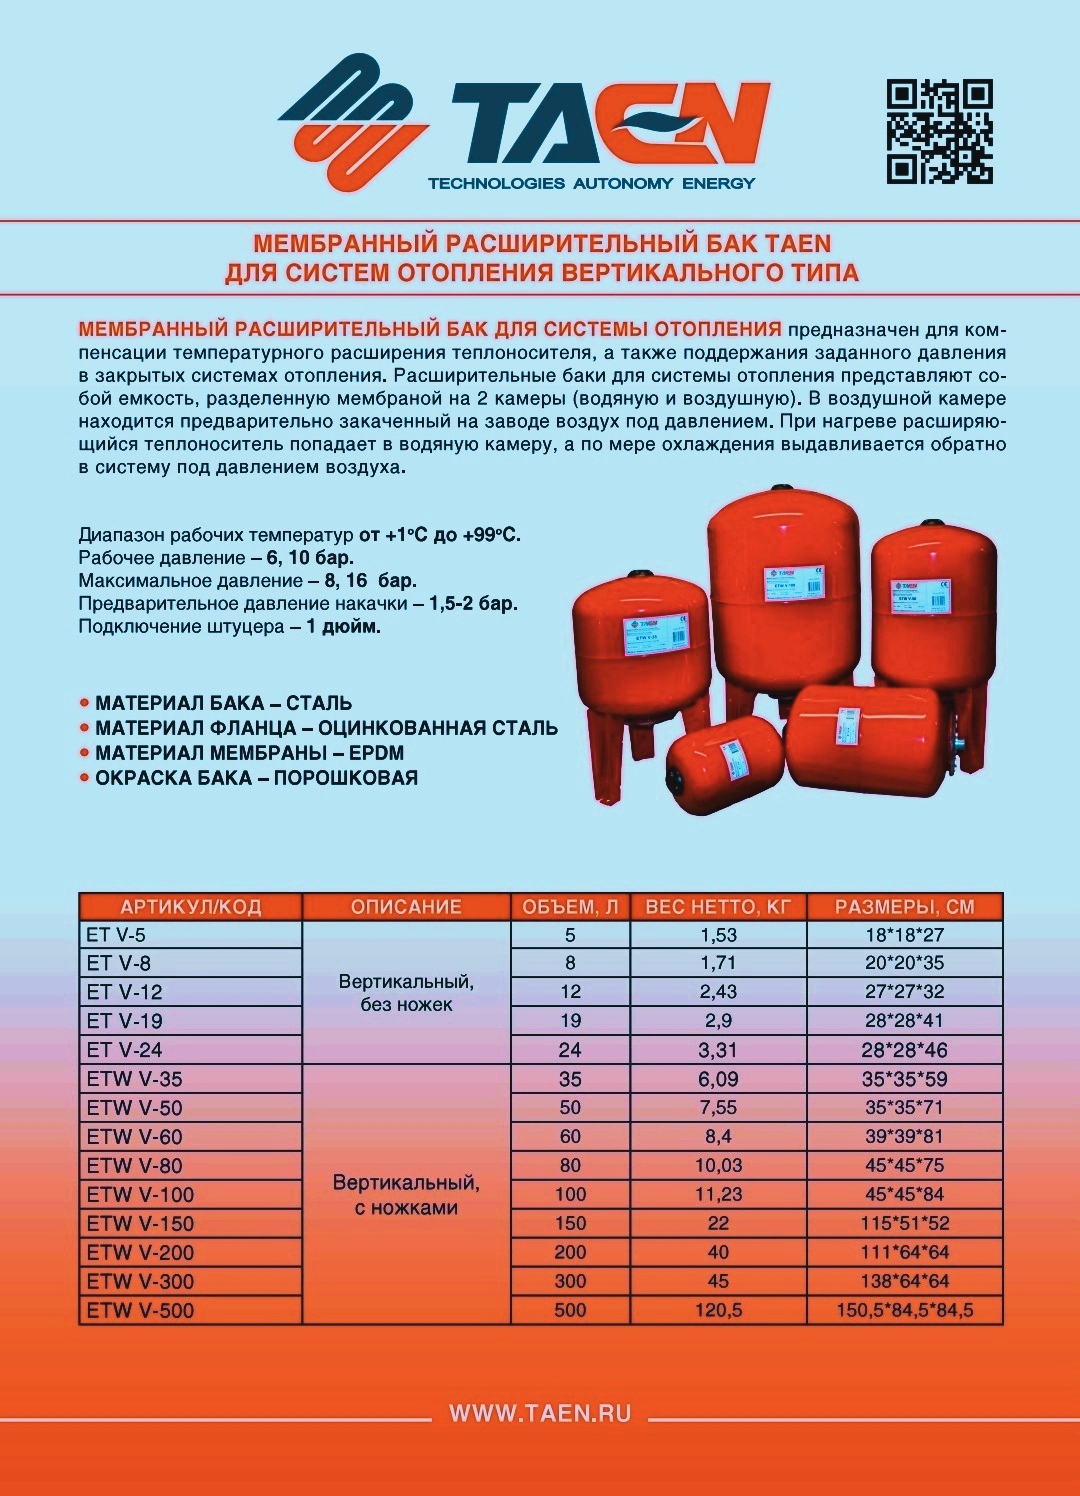 Бак расширительный для отопления TAEN ETW V-100 вертикальный купить в Самаре по низкой цене недорого в магазине Аквацентр Самара в наличии